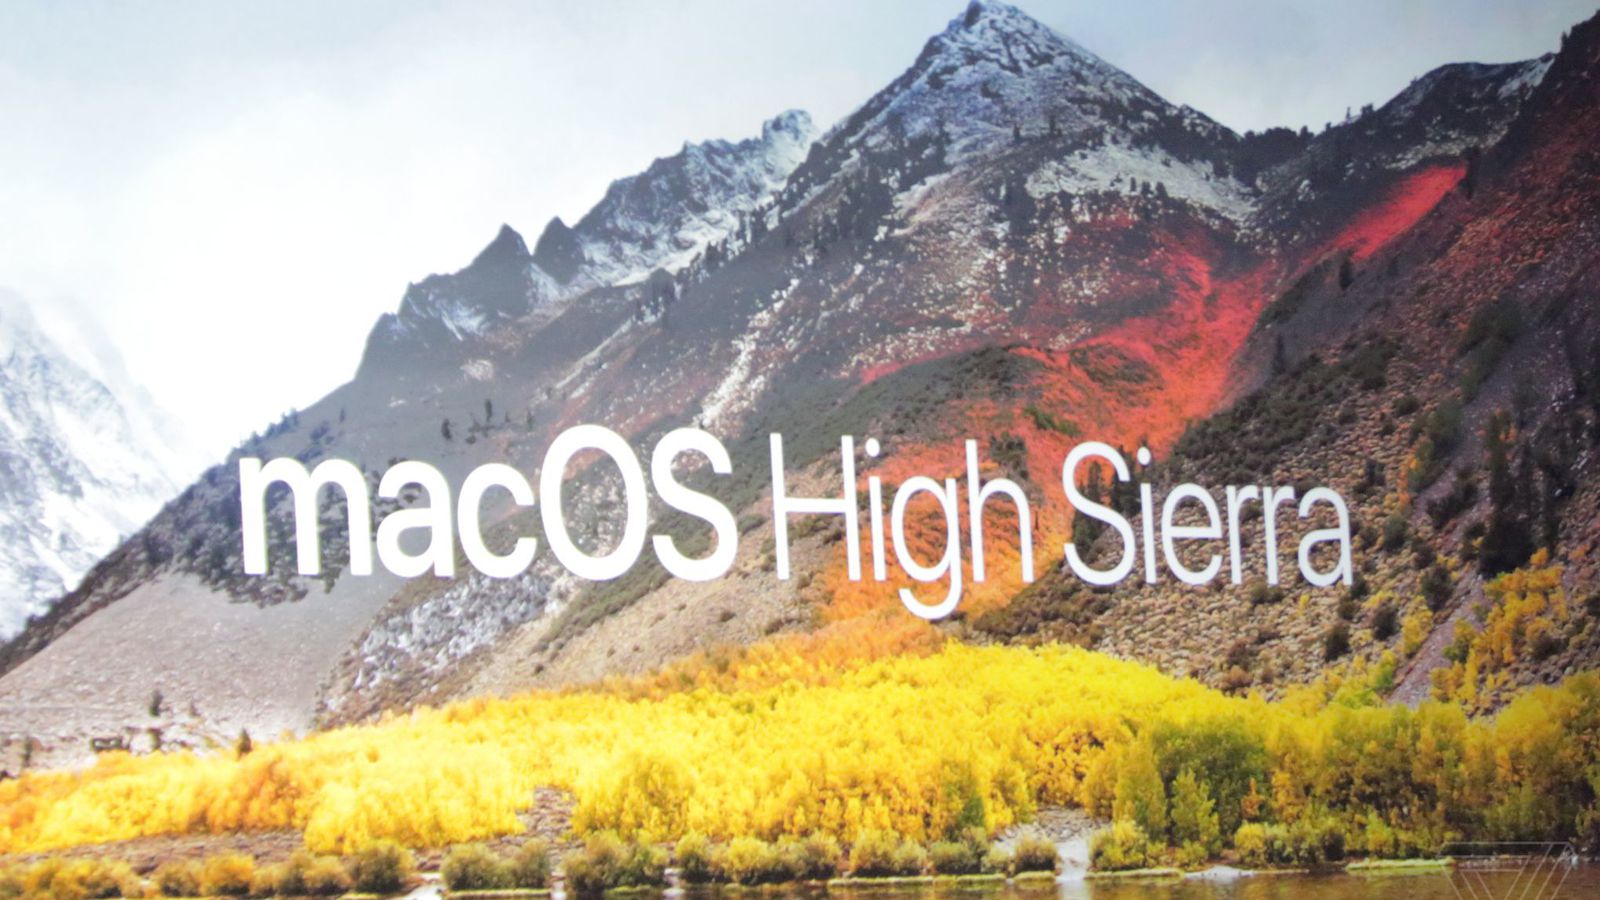 google chrome update for mac osx high sierra